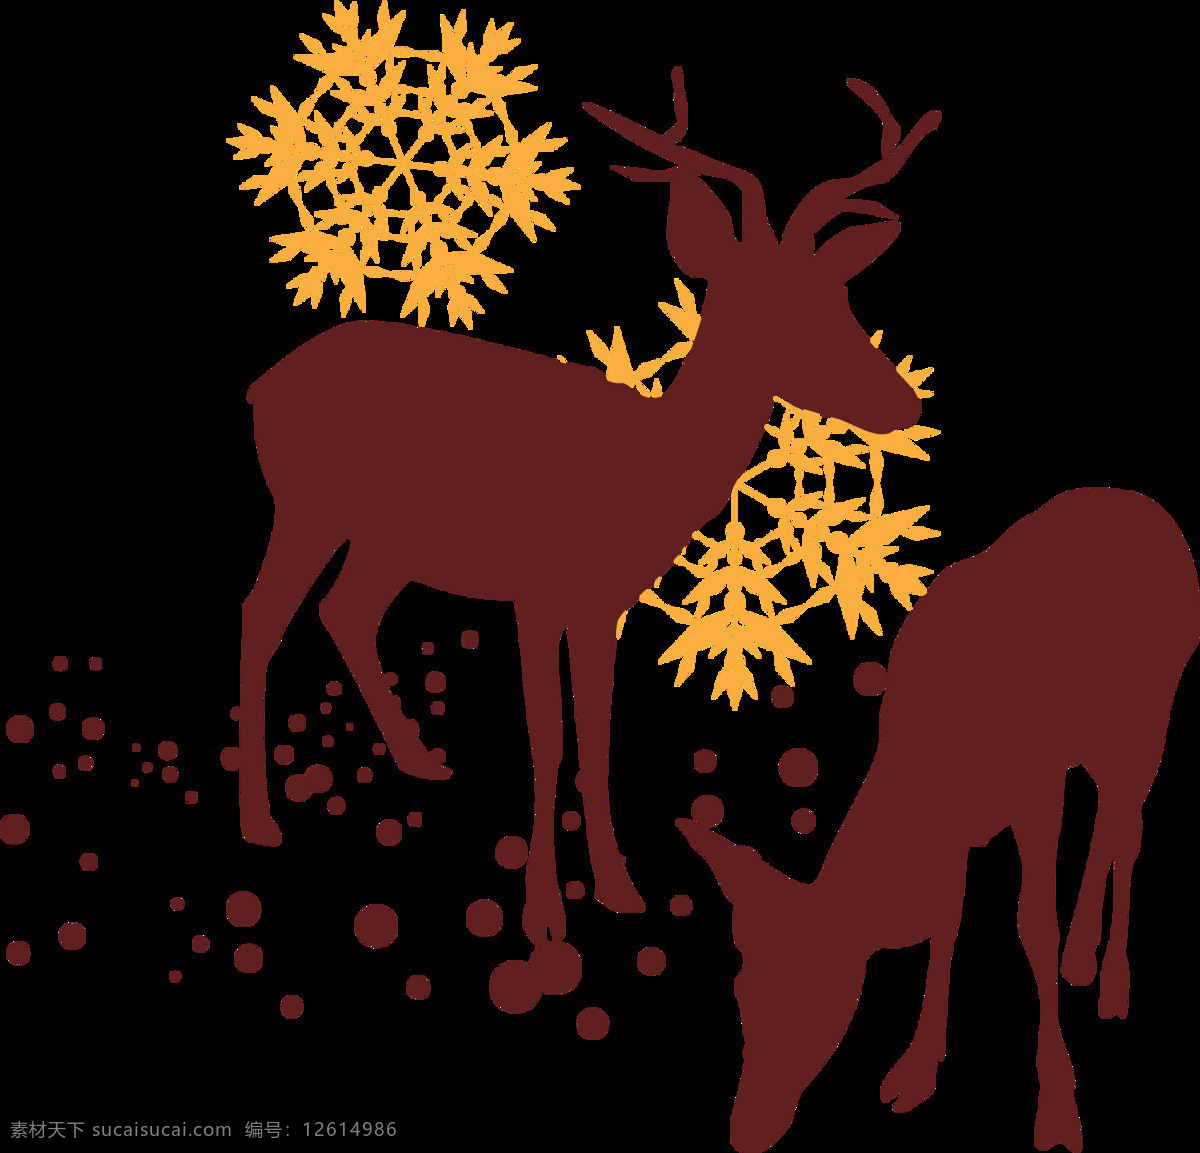 圣诞 雪花 麋鹿 元素 节日元素 卡通麋鹿 卡通圣诞元素 麋鹿png 麋鹿下载 麋鹿元素 圣诞节 圣诞节快乐 圣诞麋鹿 圣诞素材 圣诞雪花 圣诞装饰